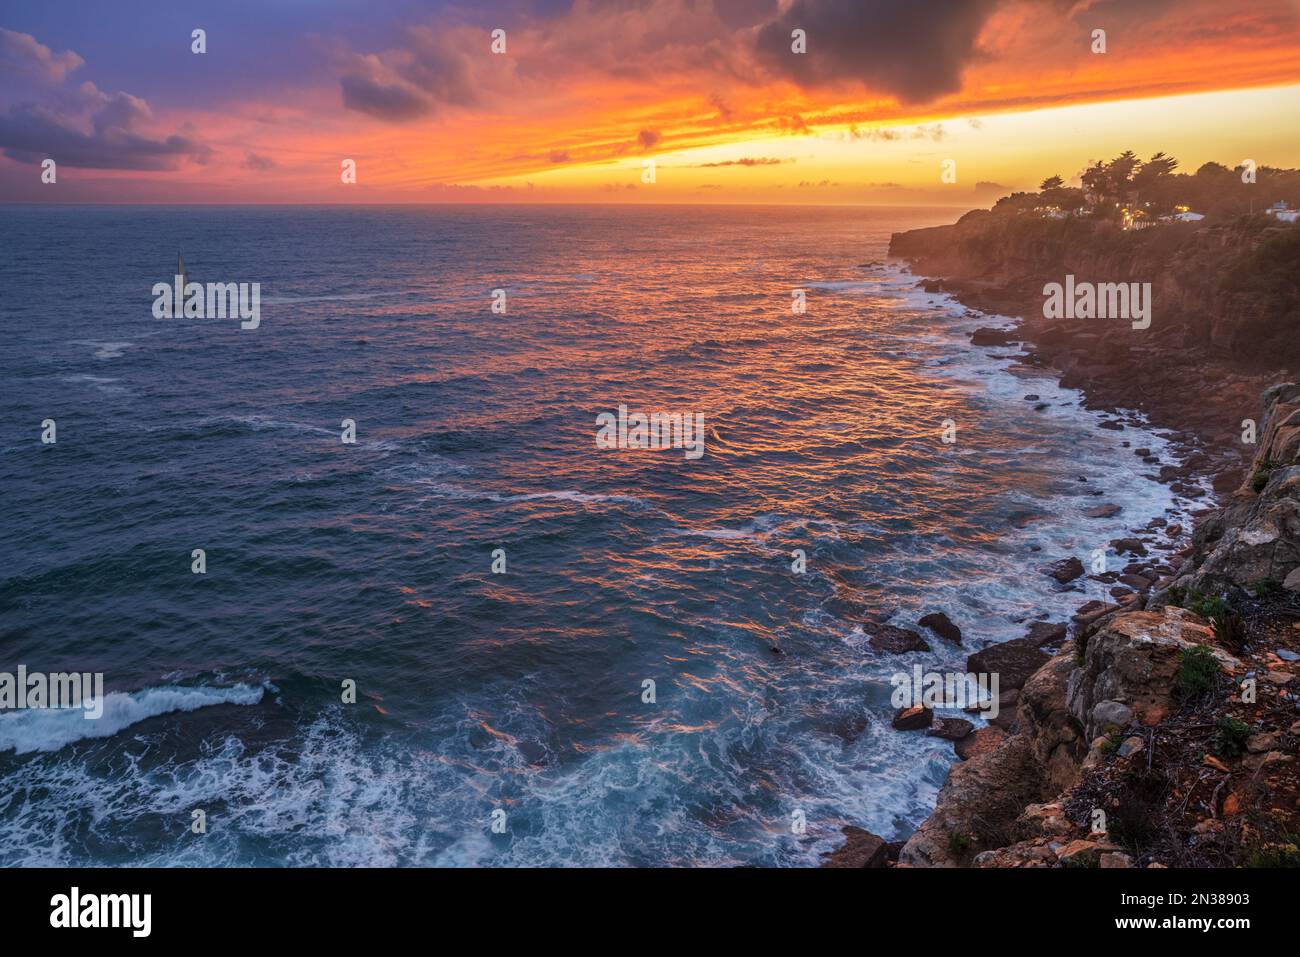 Coucher de soleil rouge coloré et ciel spectaculaire vif sur la rive rocheuse de l'océan Atlantique. Banque D'Images